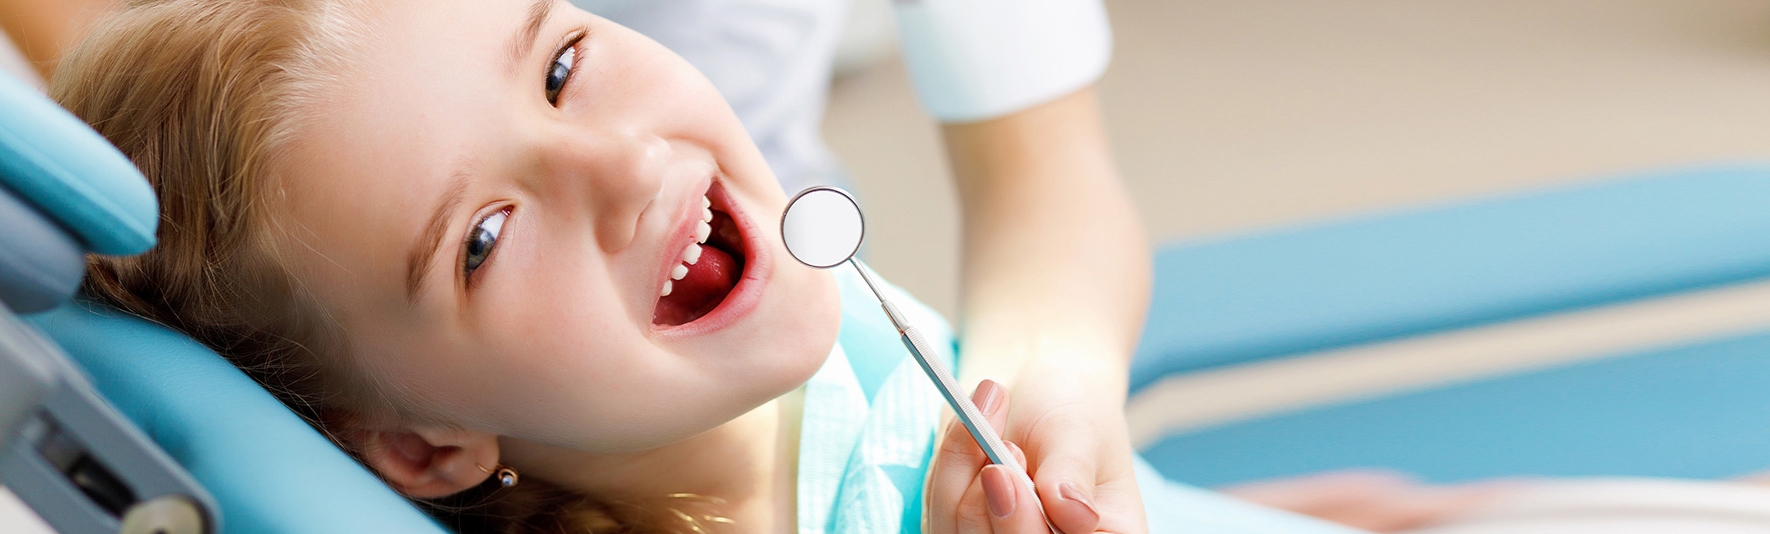 лечения зубов у детей